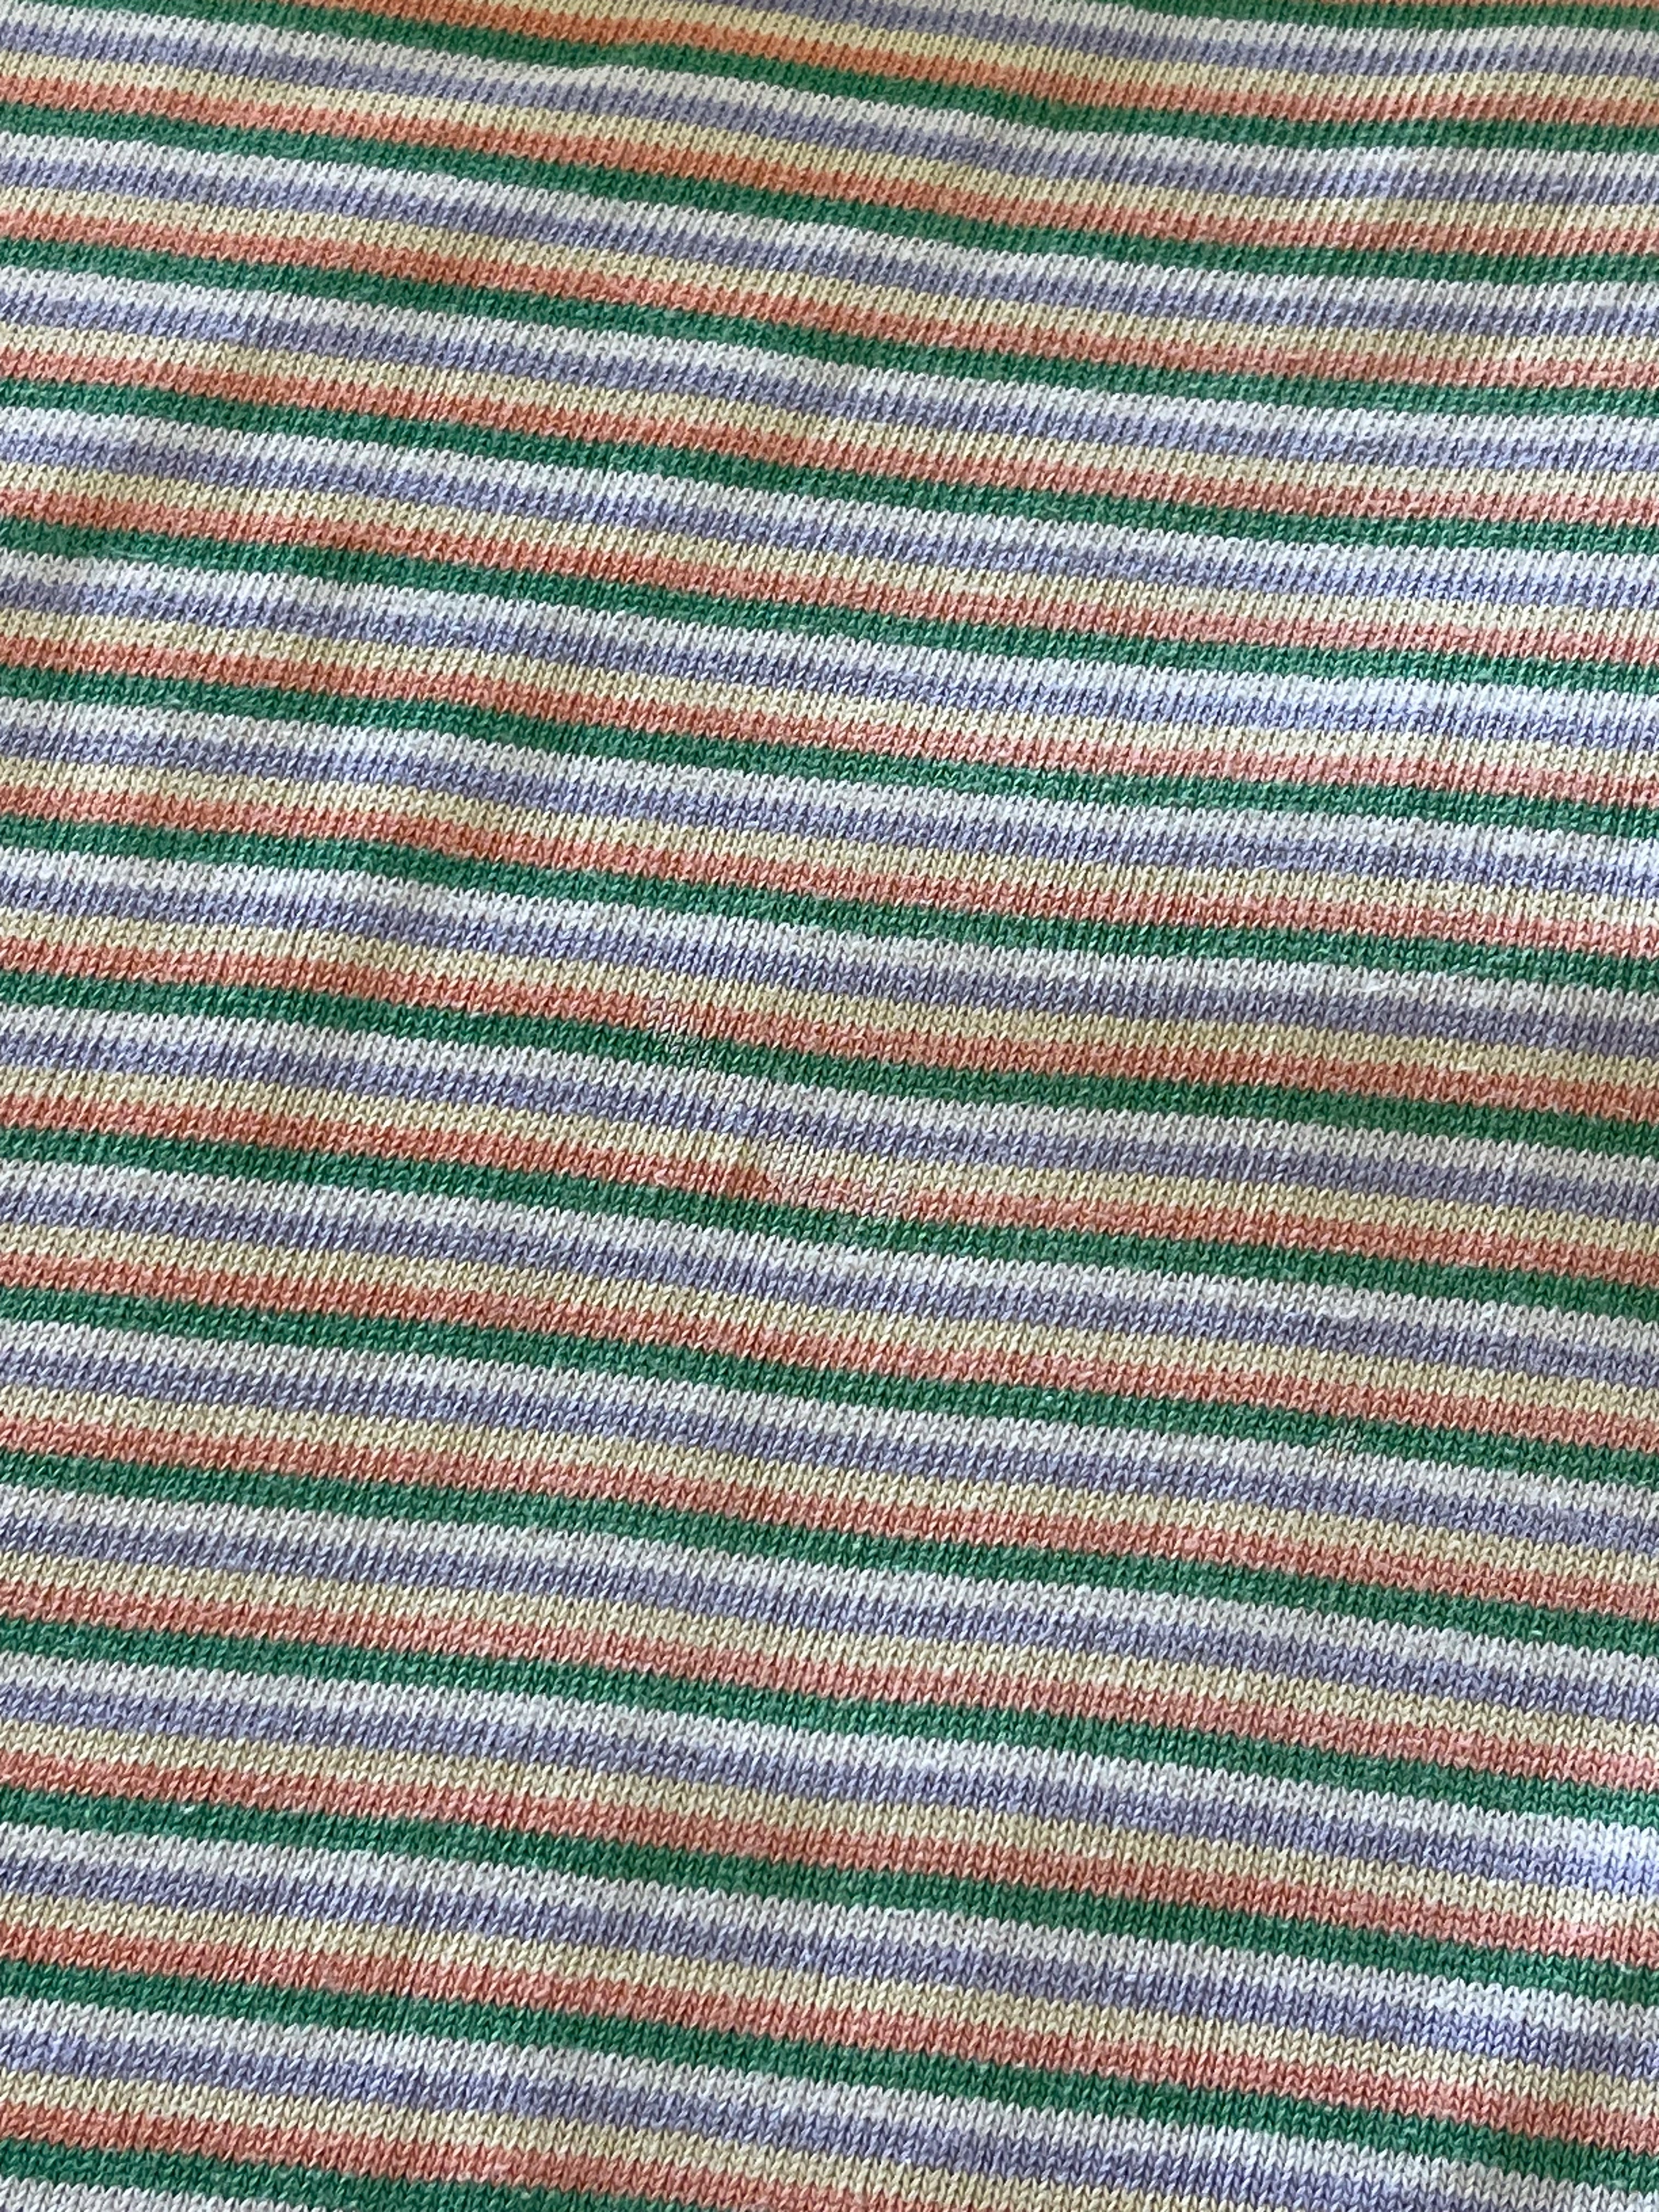 Liebeleo striped set (2y)